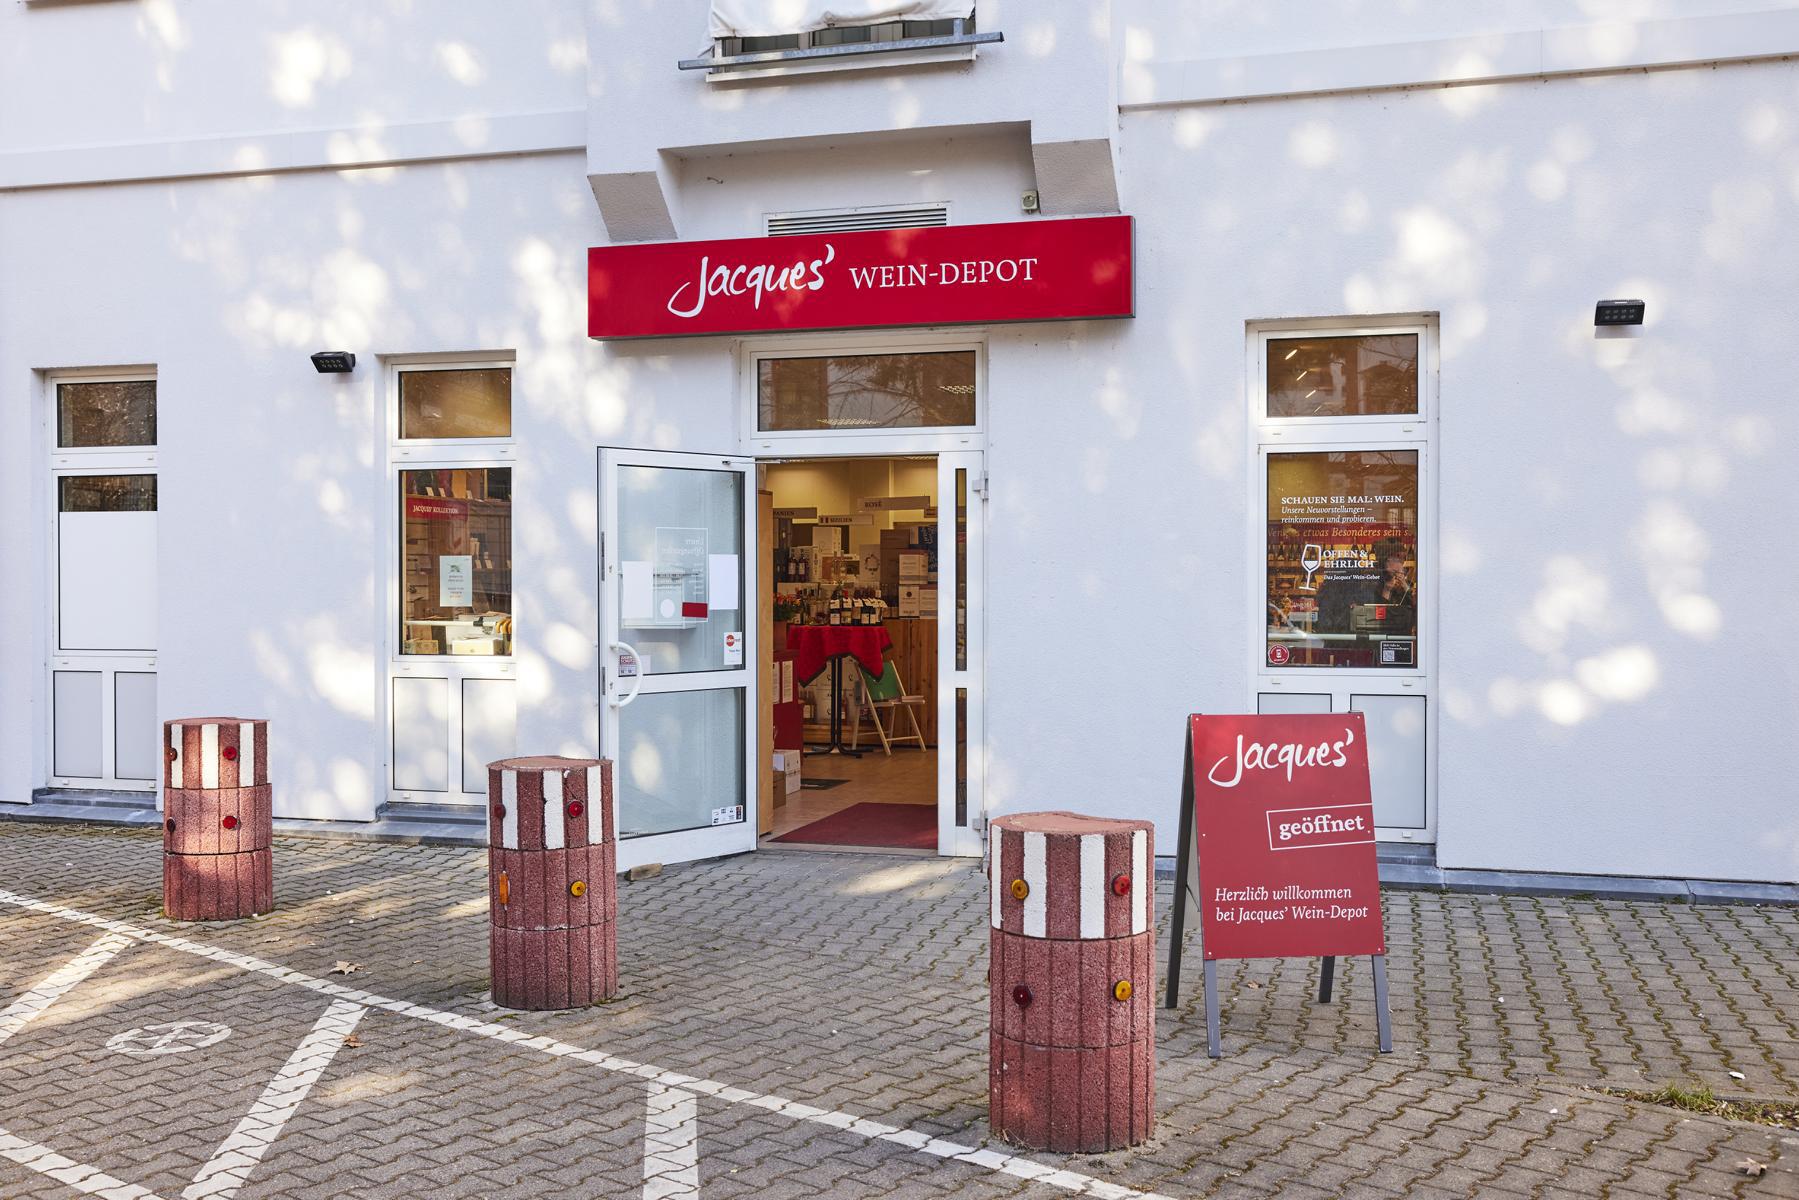 Jacques’ Wein-Depot Wiesbaden-Zentrum, Schiersteiner Straße 39 in Wiesbaden